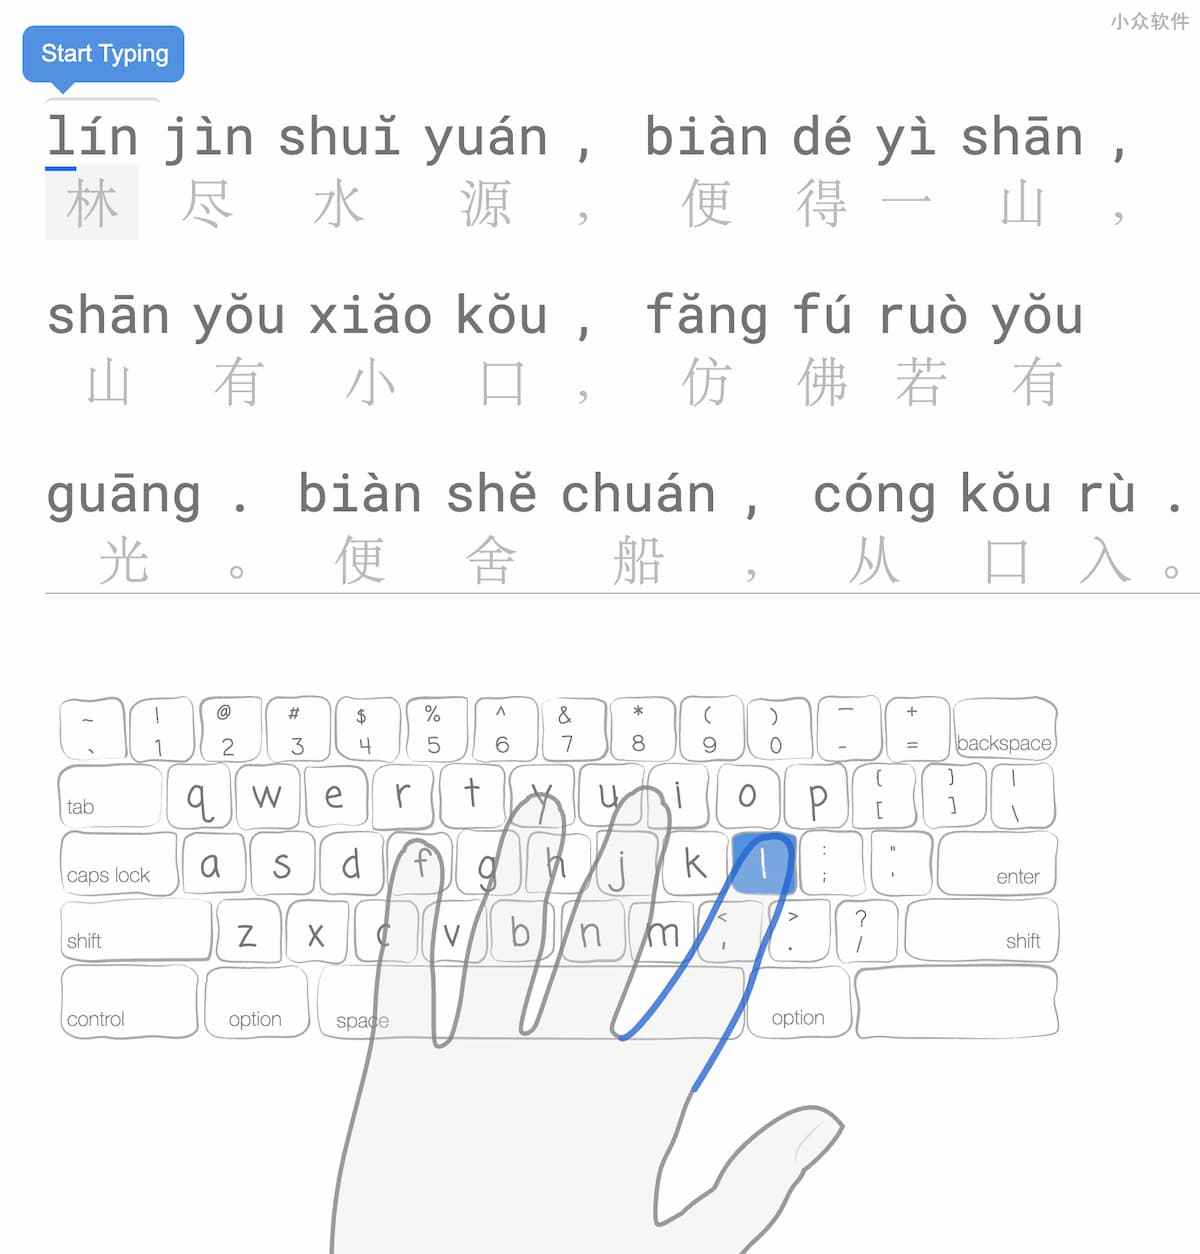 指法输入中文打字俱乐部（TypingClub）- 从 0 开始练习打字，支持多键盘布局、多语种、拼音，以及单手输入、旁白等 5